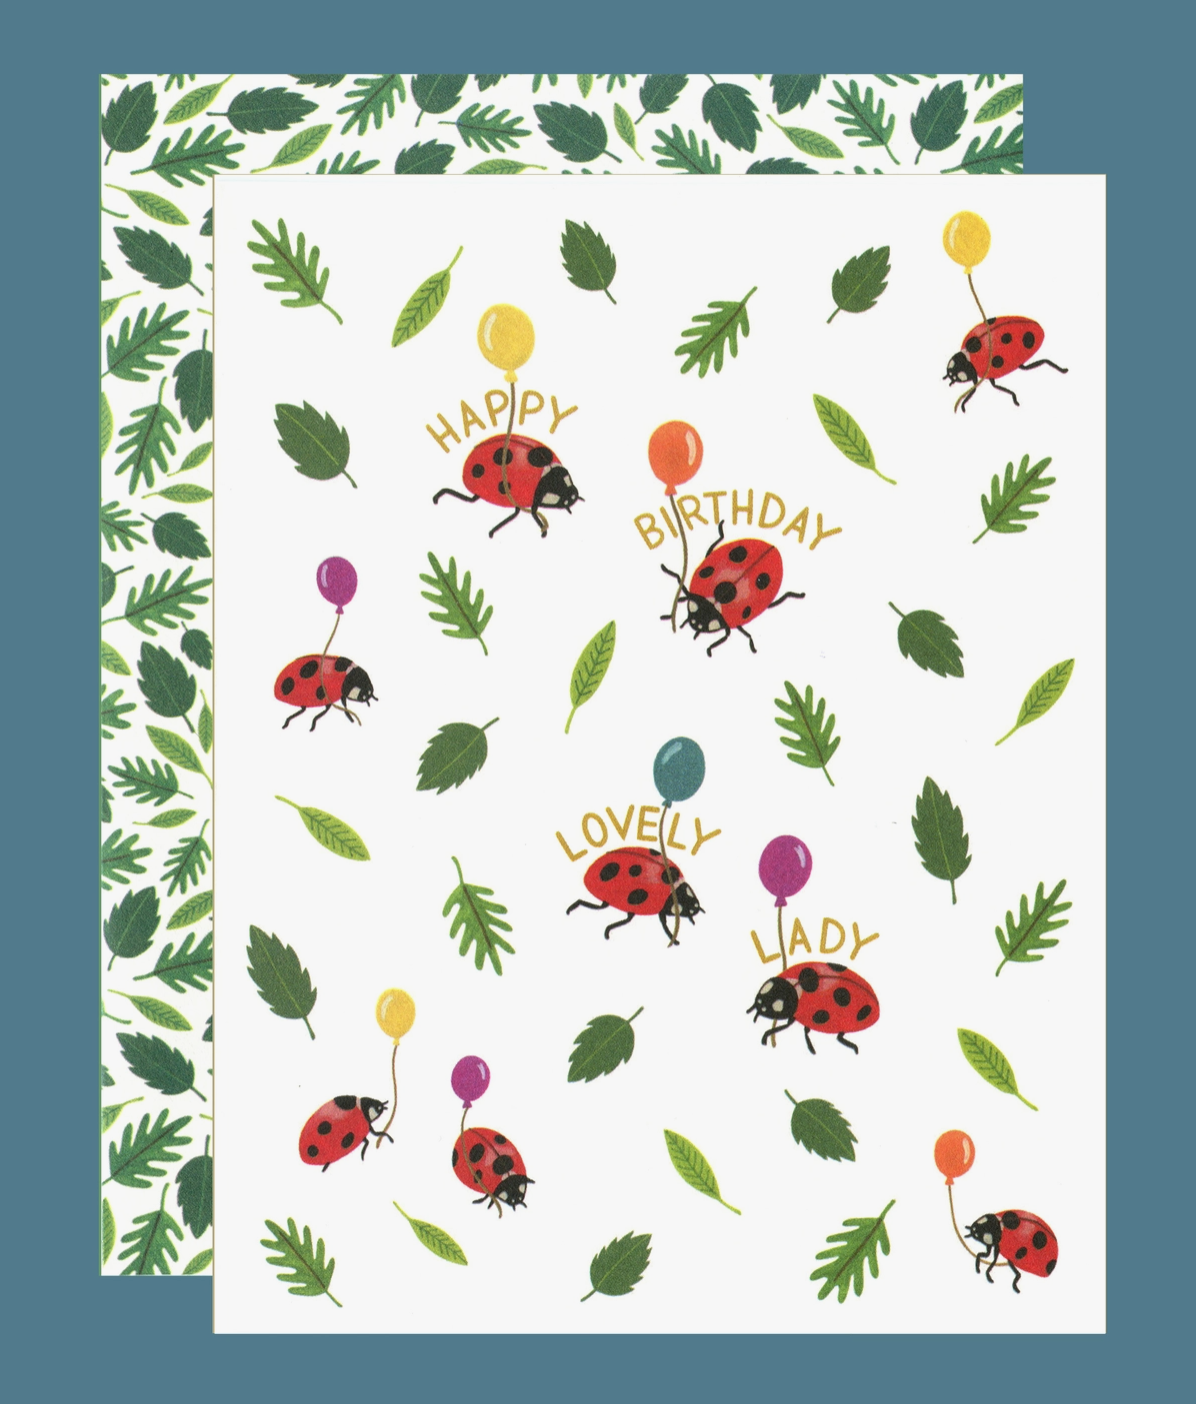 Ladybug Lovely Lady Birthday Card